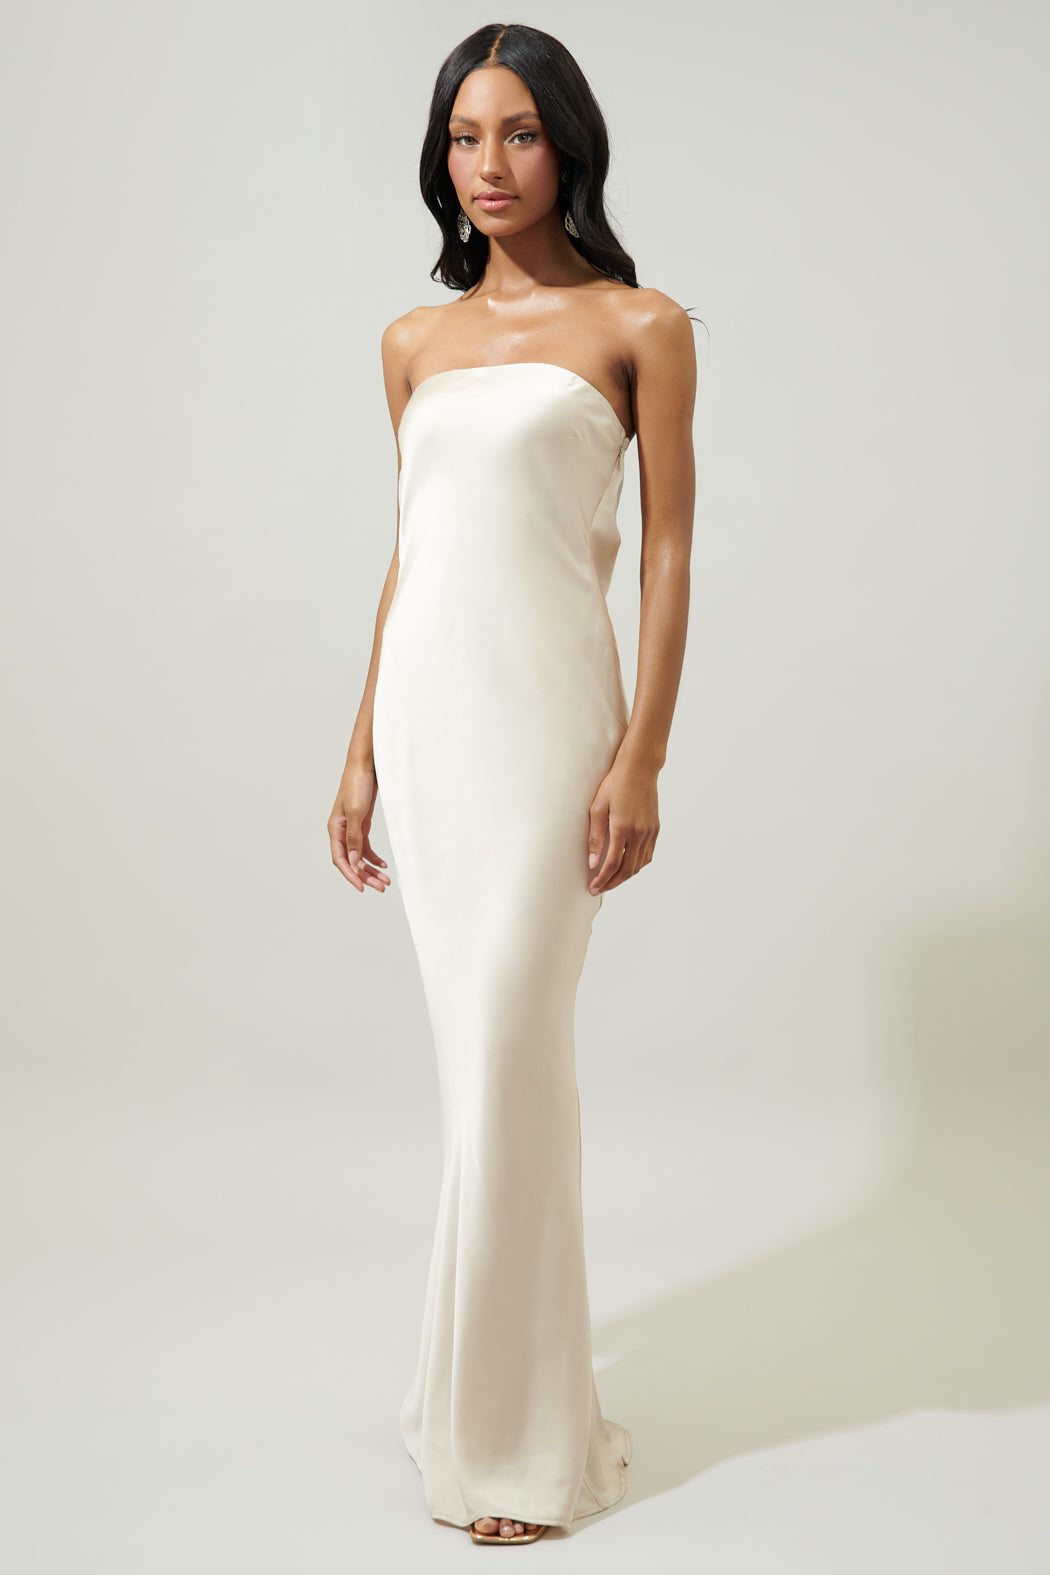 white strapless dress